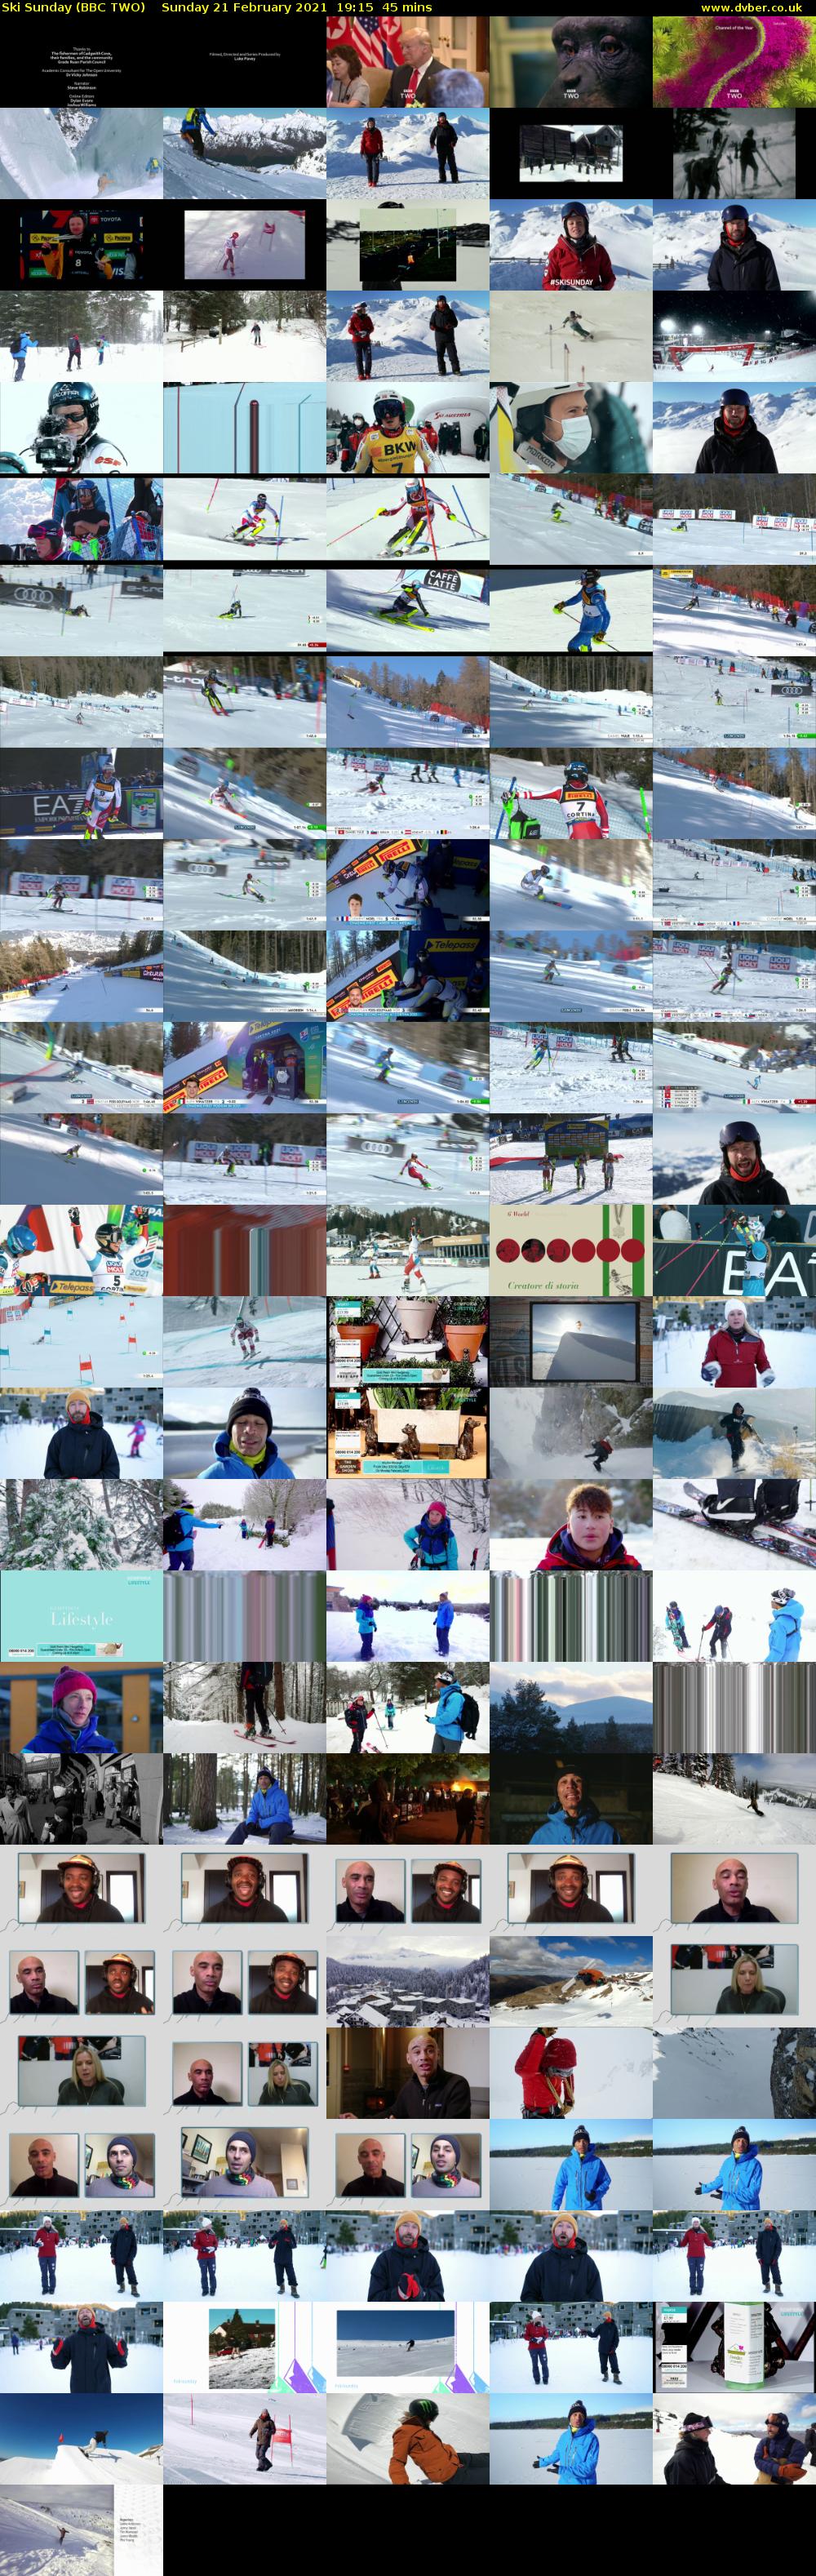 Ski Sunday (BBC TWO) Sunday 21 February 2021 19:15 - 20:00